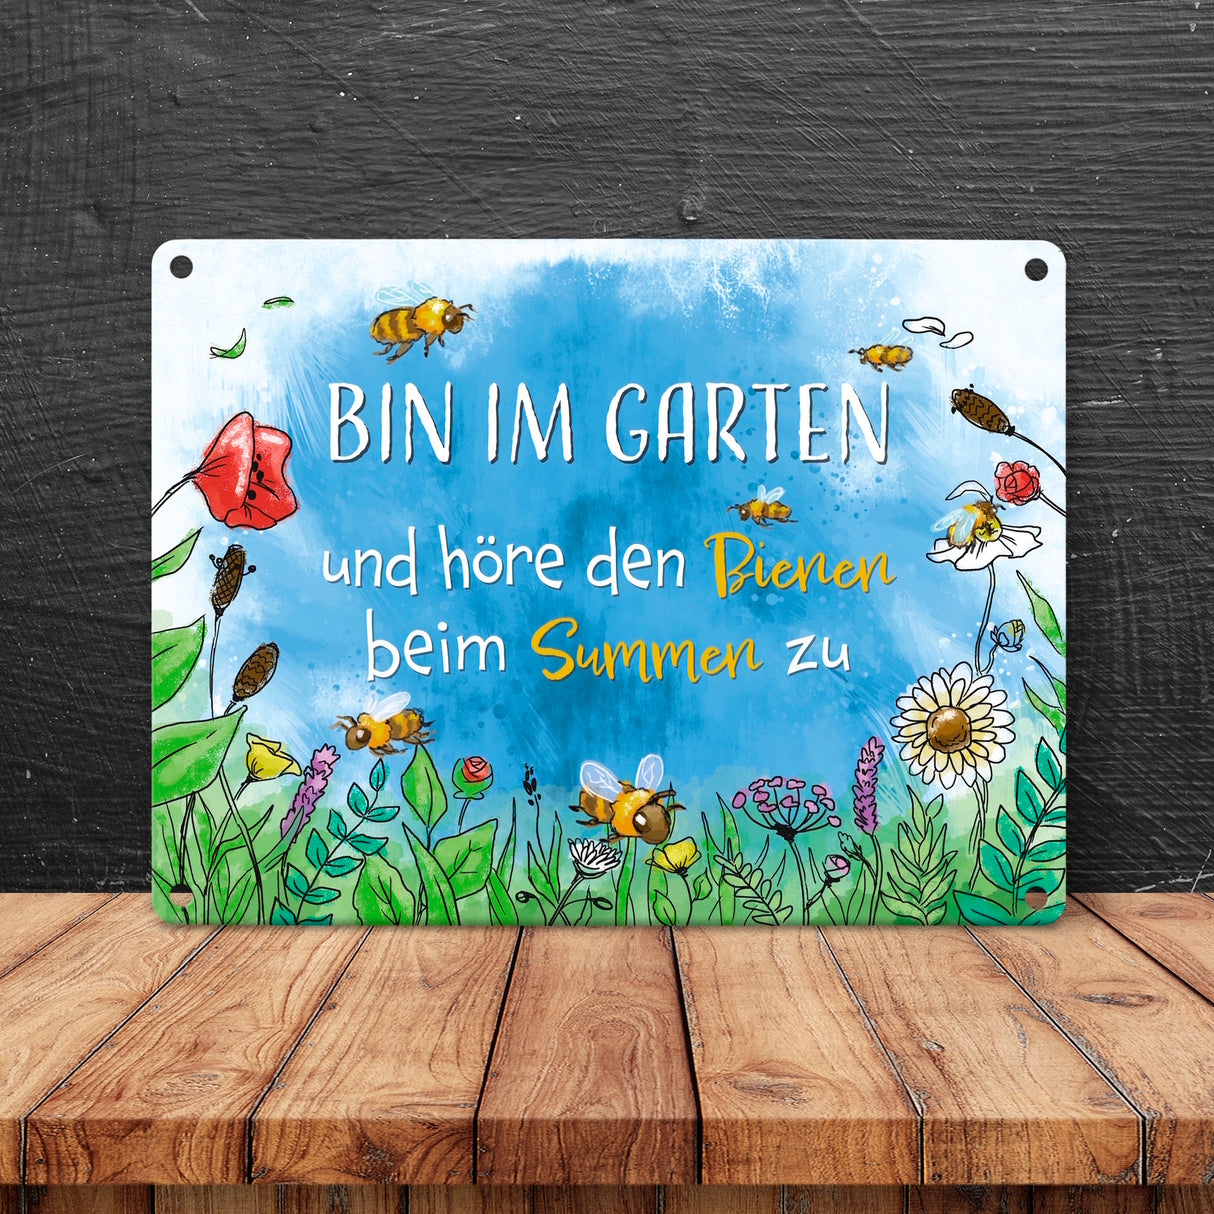 Bin im Garten Metallschild in 15x20 cm mit Blumenwiese und Bienen